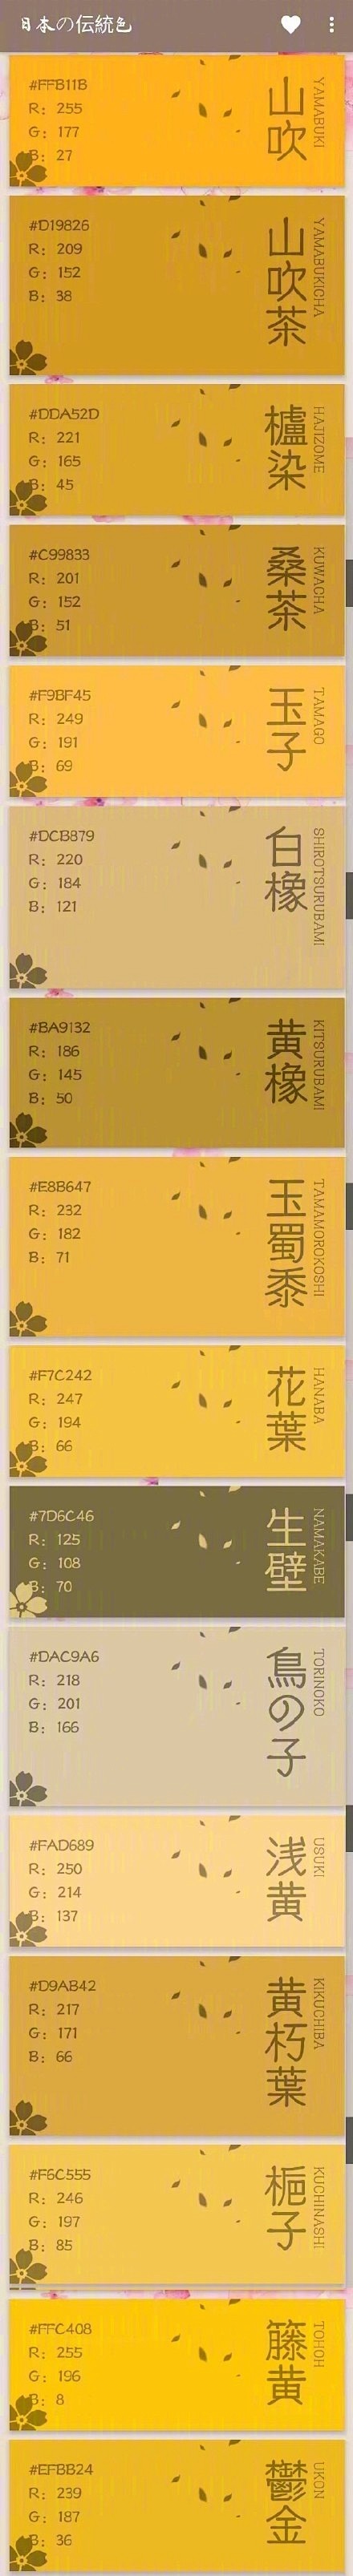 日本的传统色名称及其RGB值，细微渐变、...